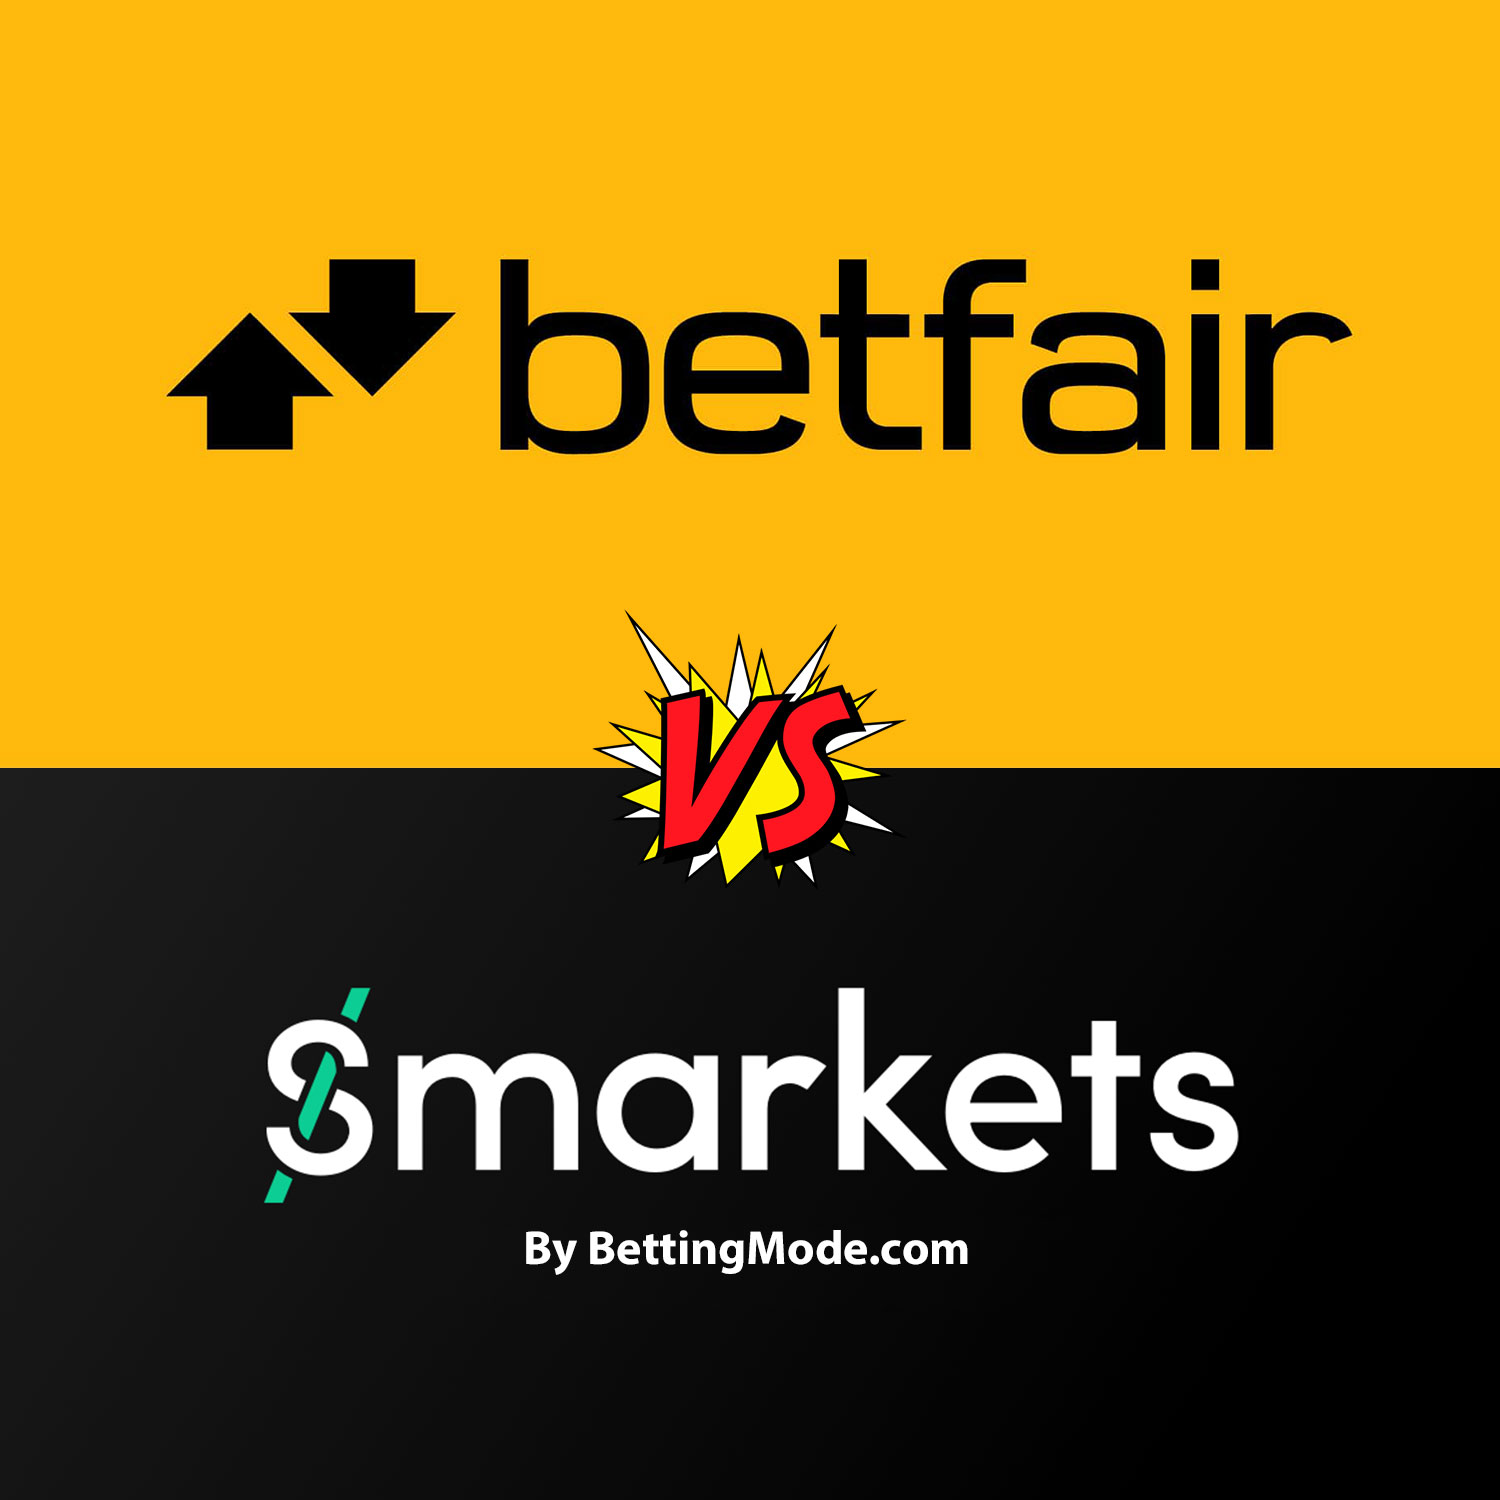 Betfair Vs Smarkets Comparison and Review